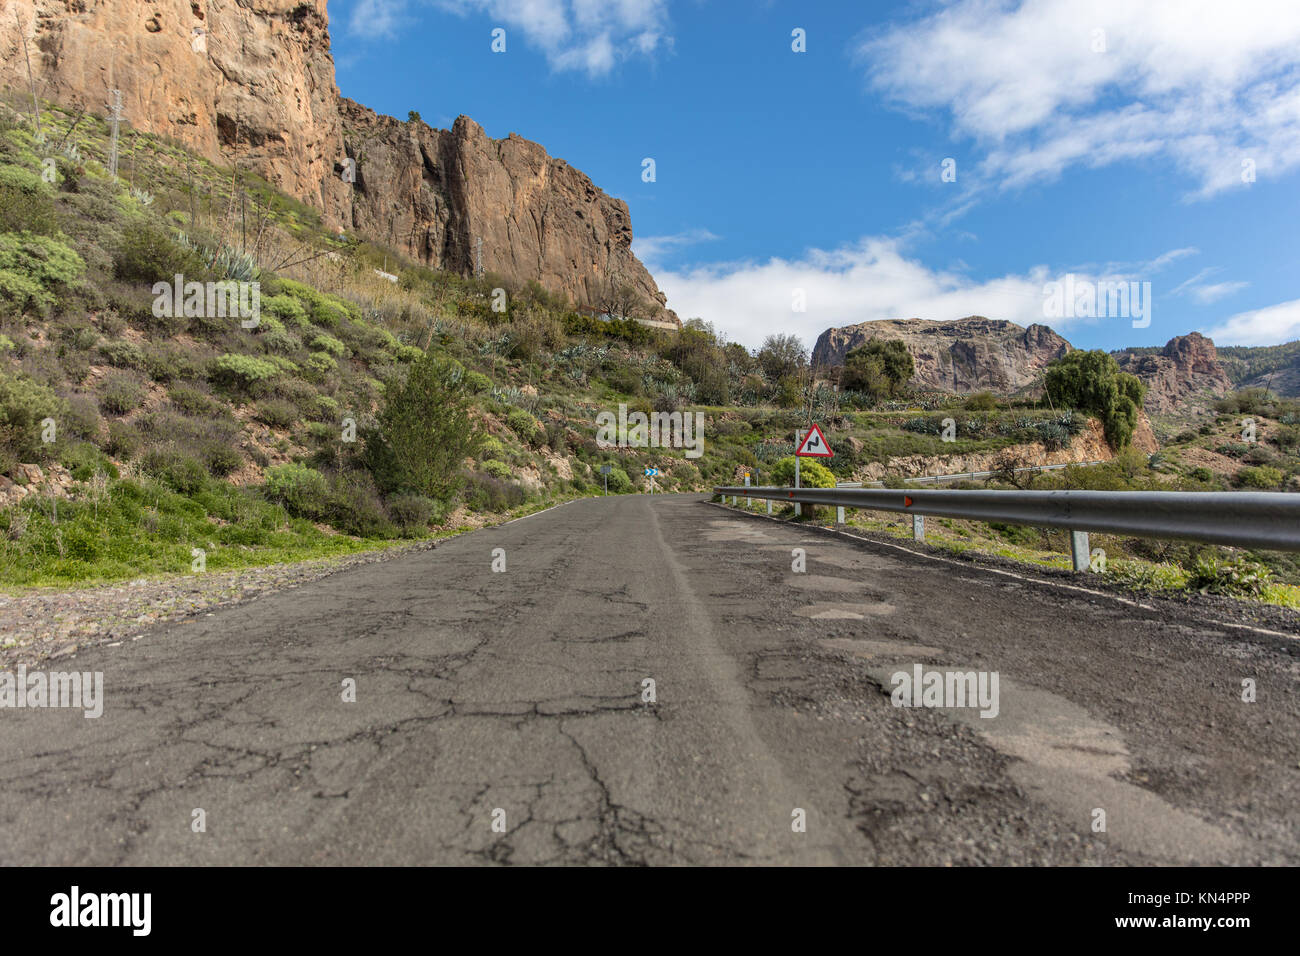 Calle con barandilla y curva doble señal de tráfico en carreteras de montaña en Gran Canaria. Foto de stock